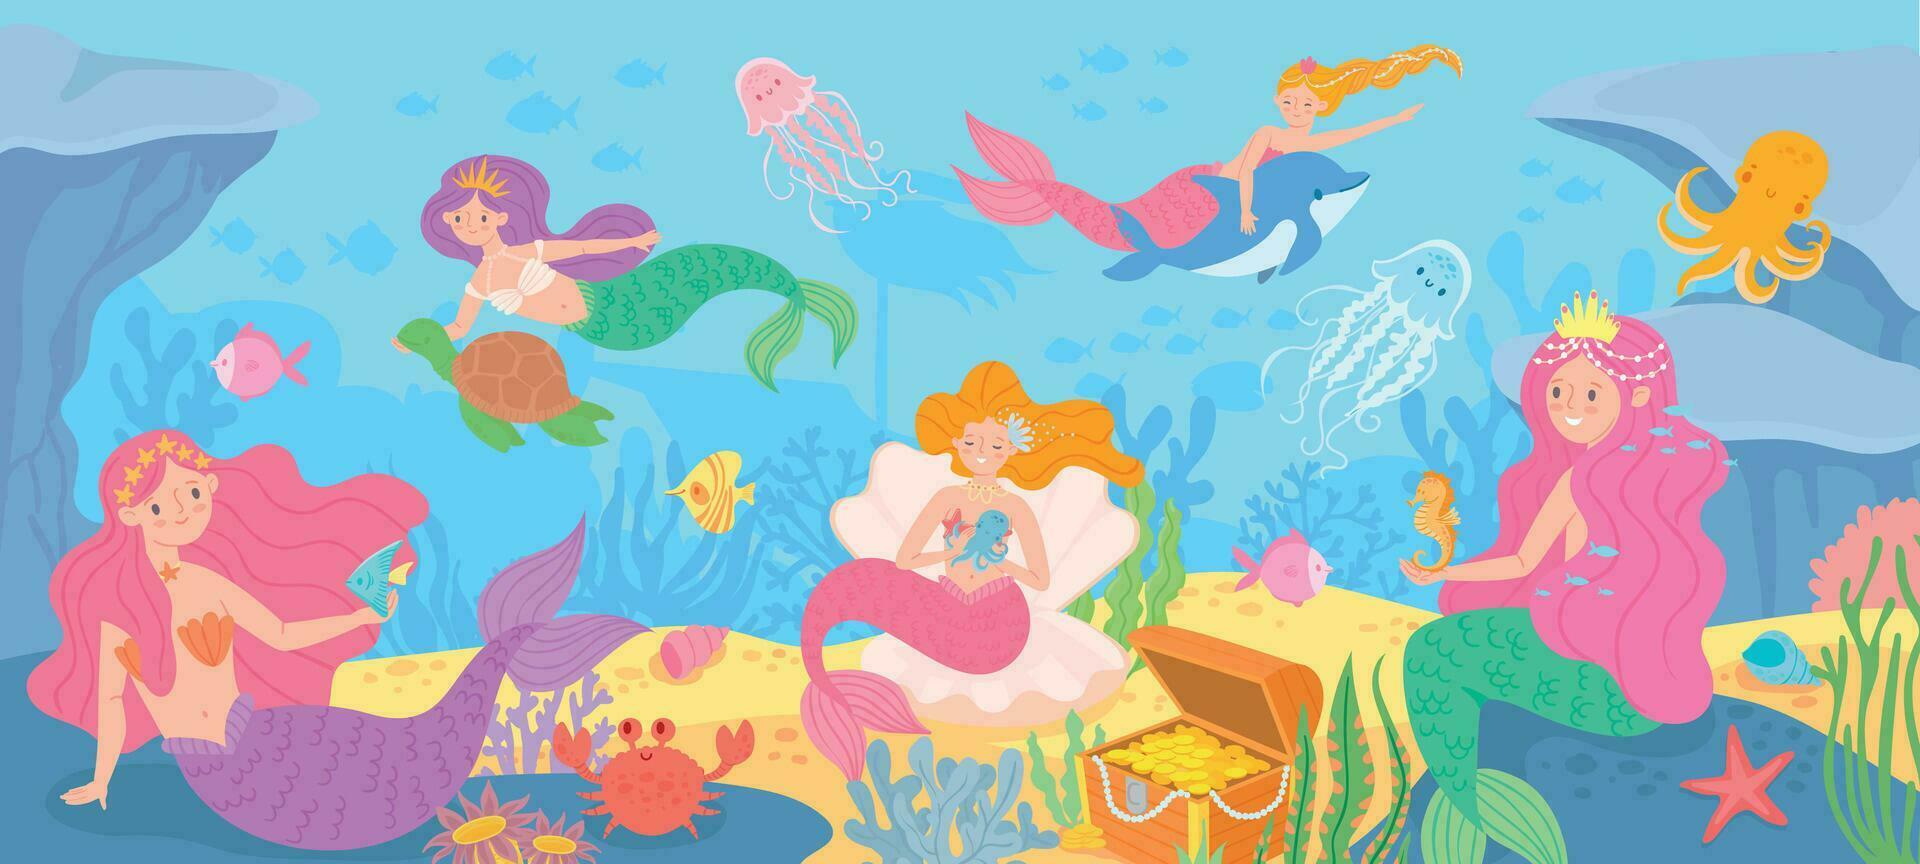 unter Wasser mit Meerjungfrauen. Meeresboden mit mythisch Prinzessinnen und Meer Kreaturen, Algen und Muschel, Krake, Schatz Karikatur Vektor Hintergrund